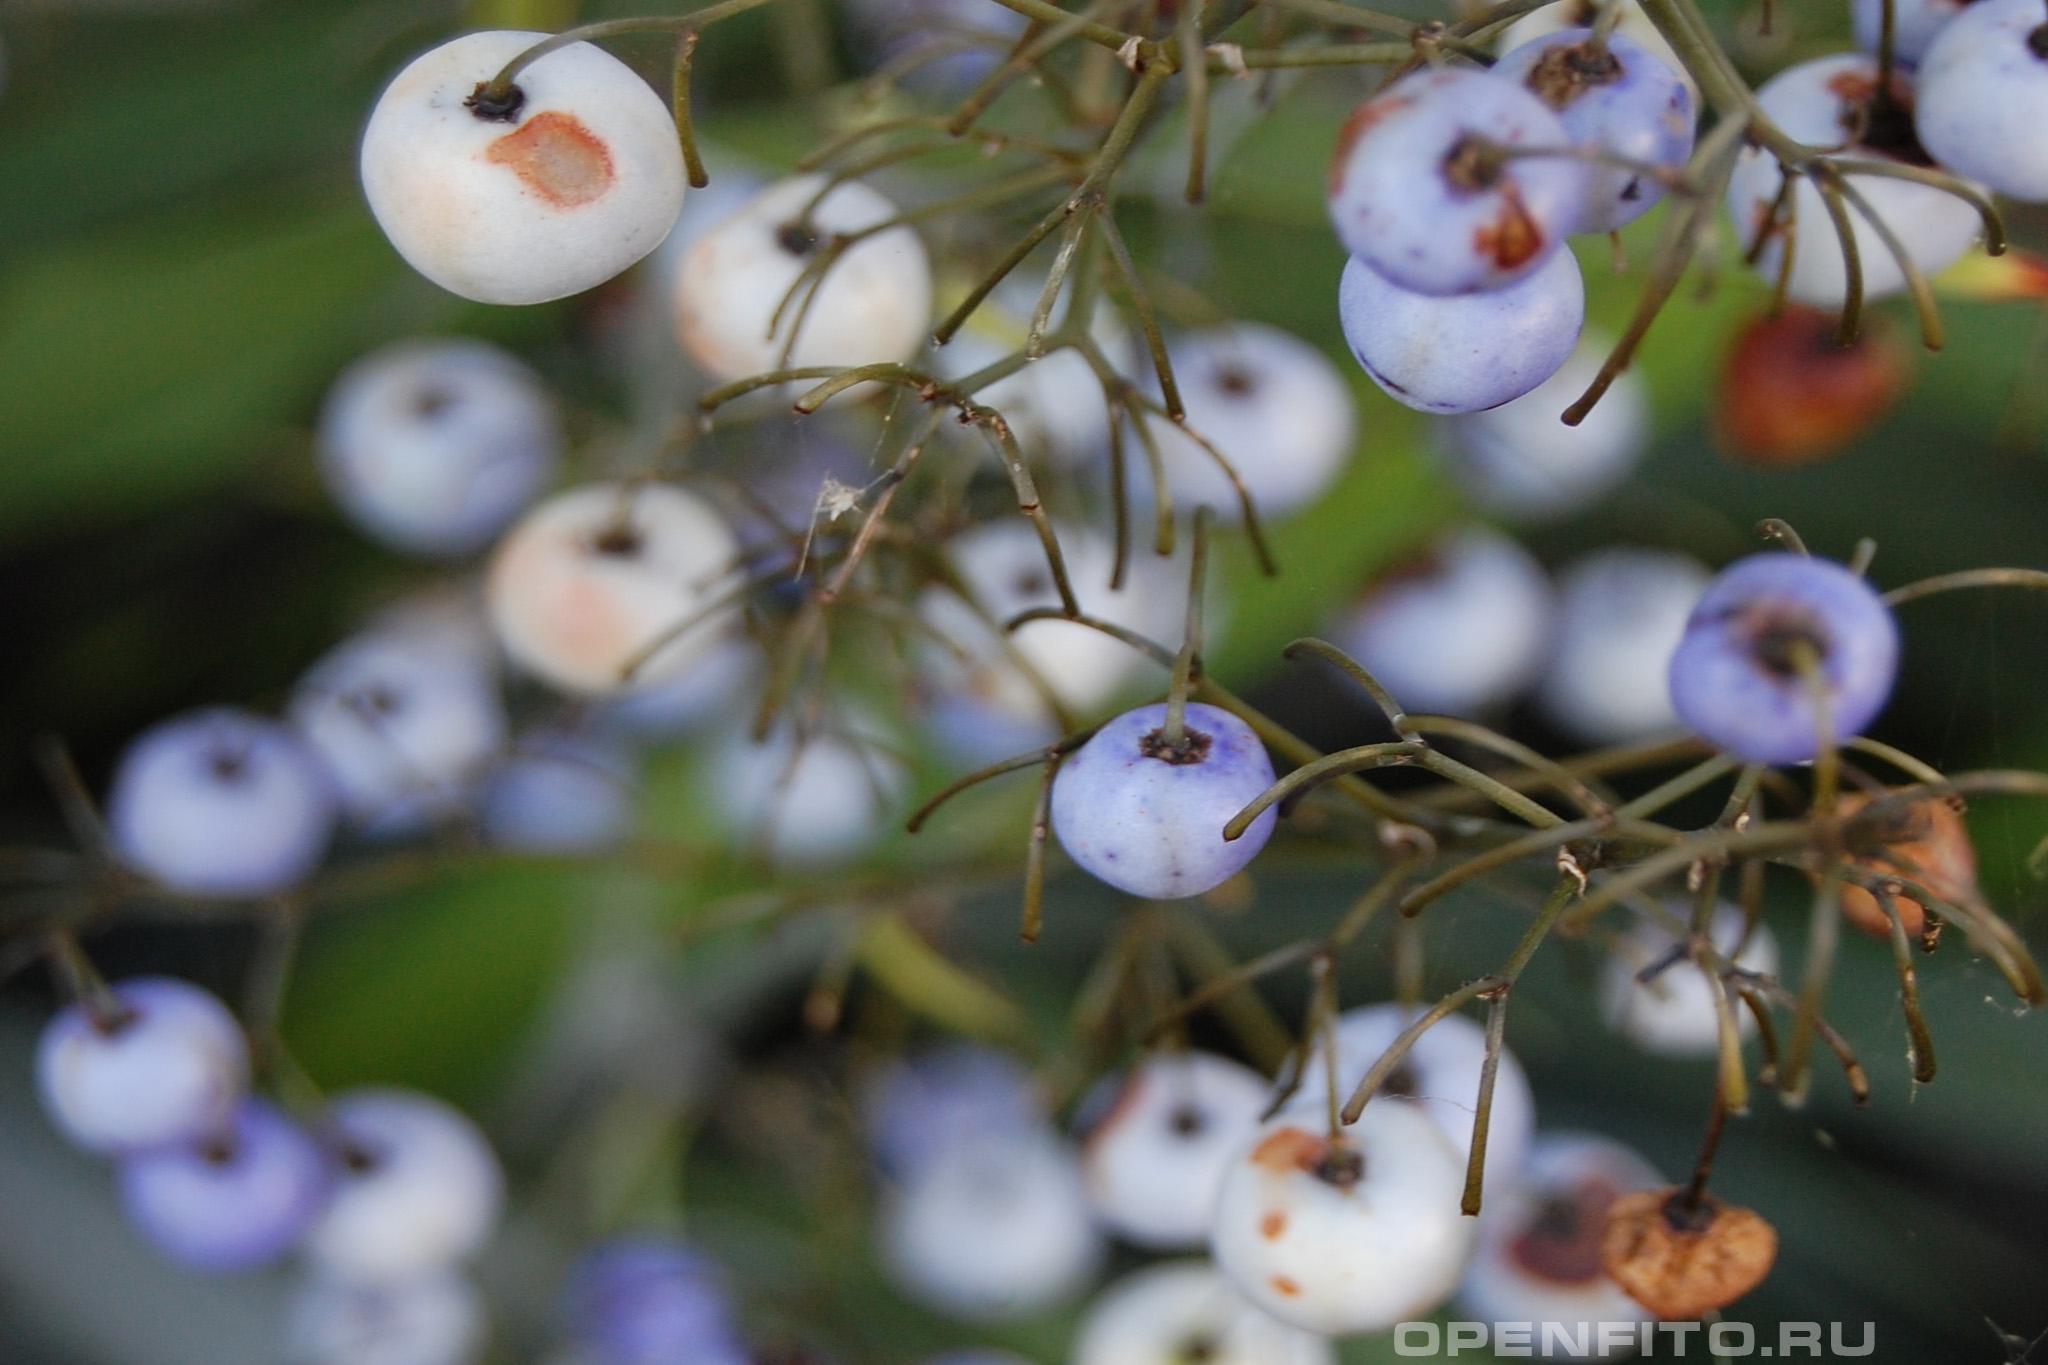 Дианелла тасманийская - фотография плодов